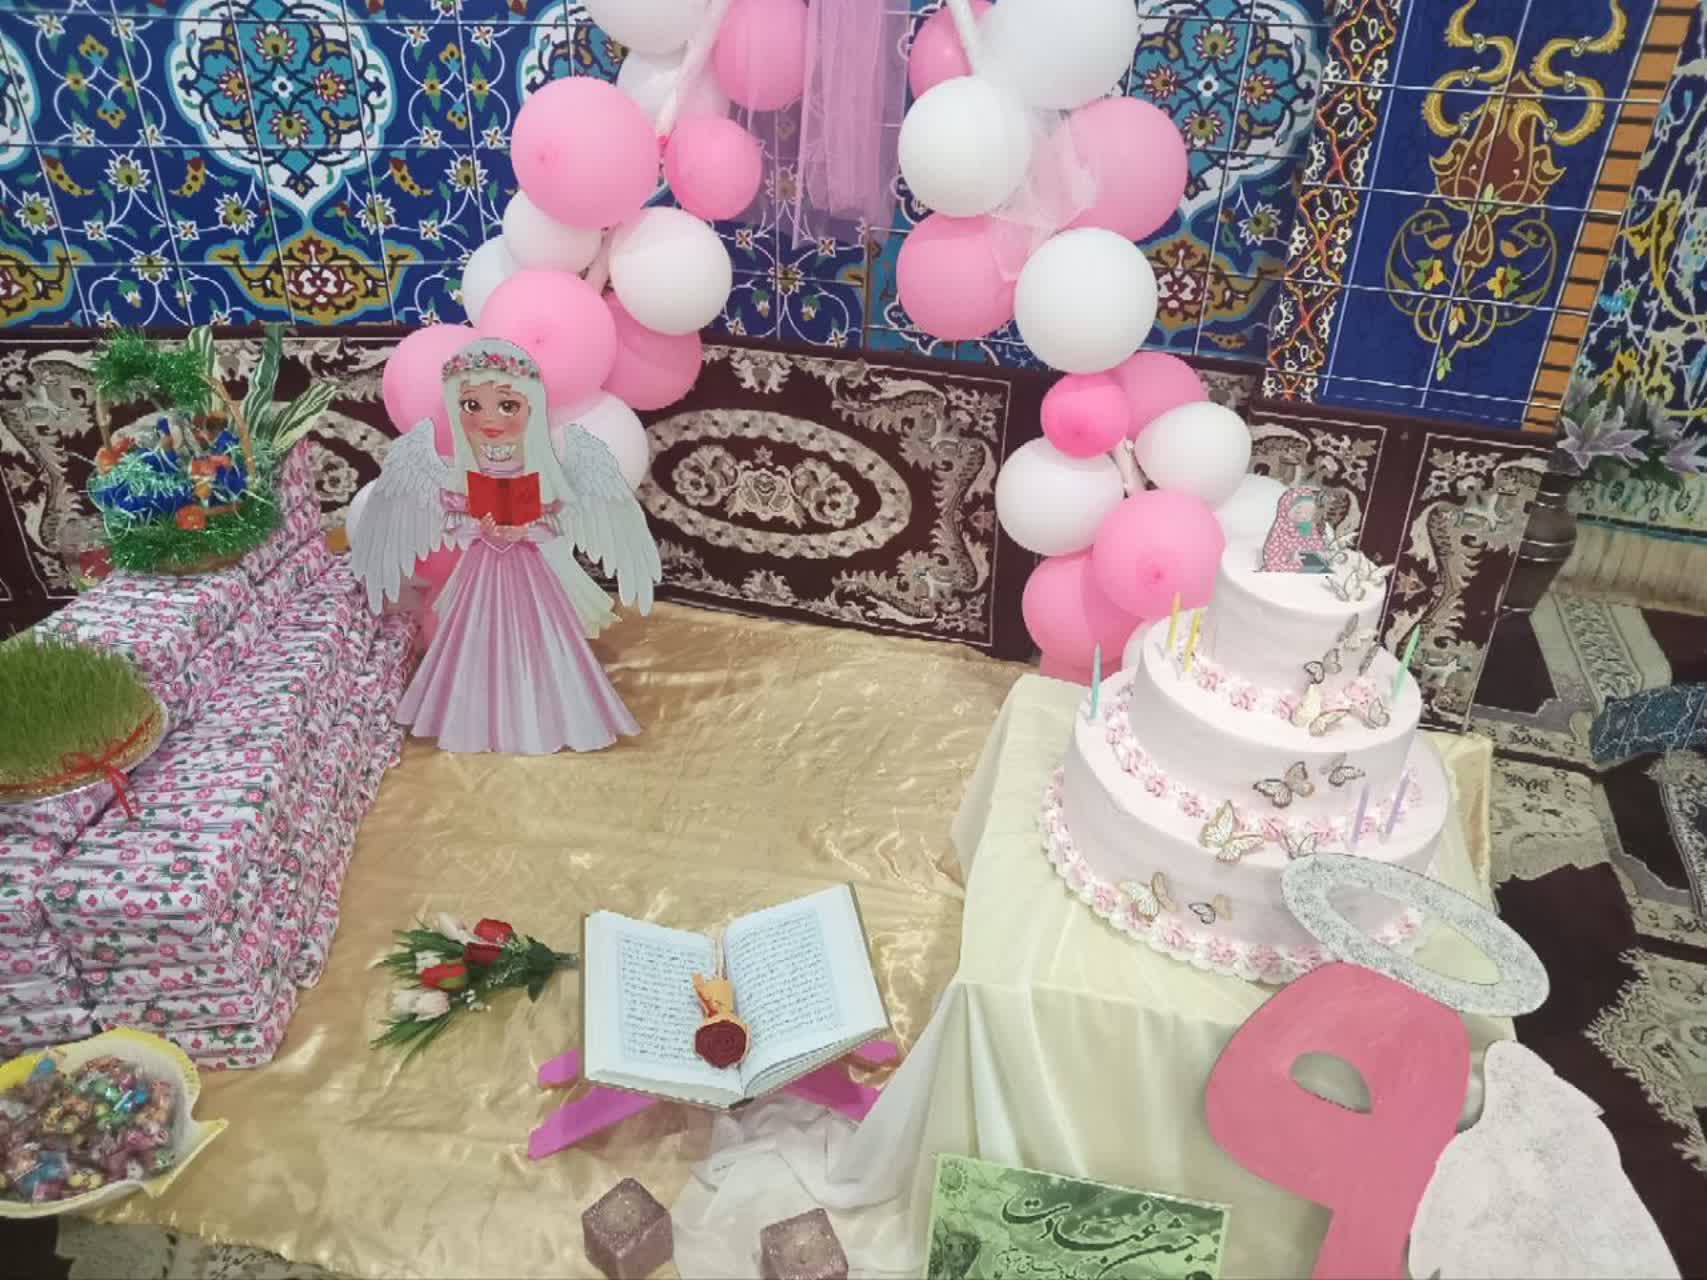 جشن تکلیف ۹۰ دانش آموز دختر به همت کانون فرهنگی ثقلین رشت برگزار شد